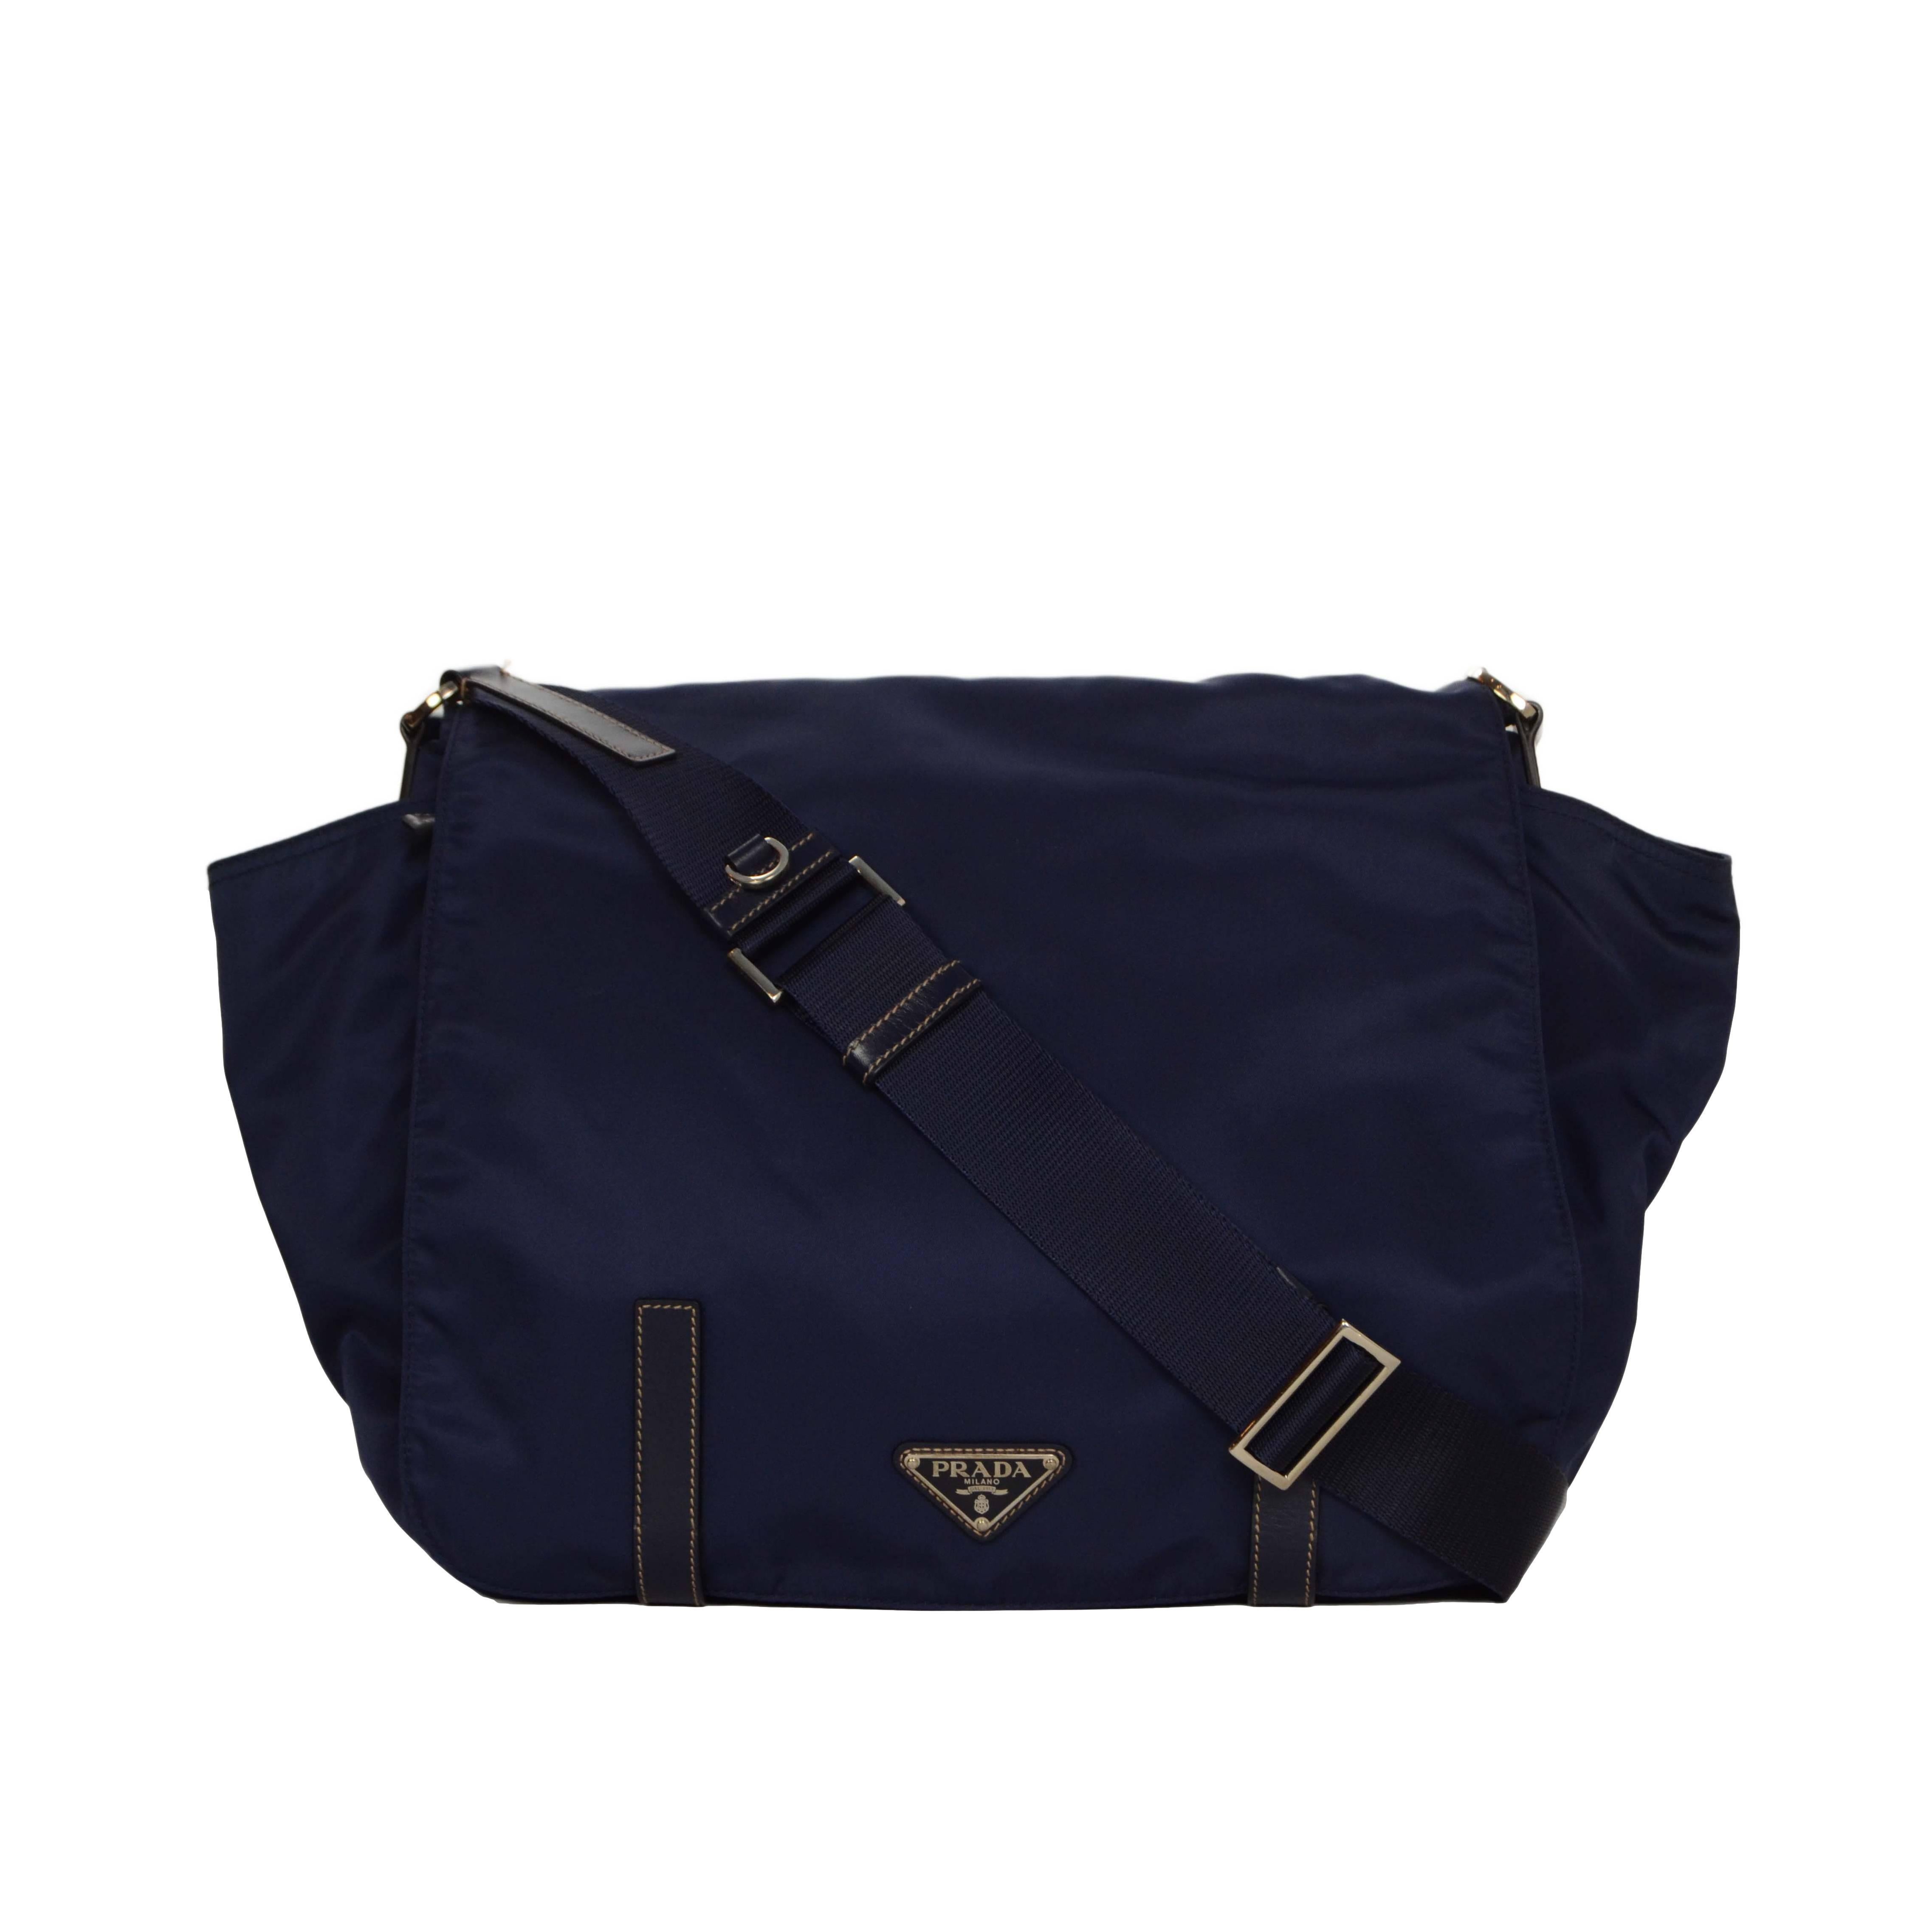 Prada Navy Blue Nylon Crossbody Bag SHW 